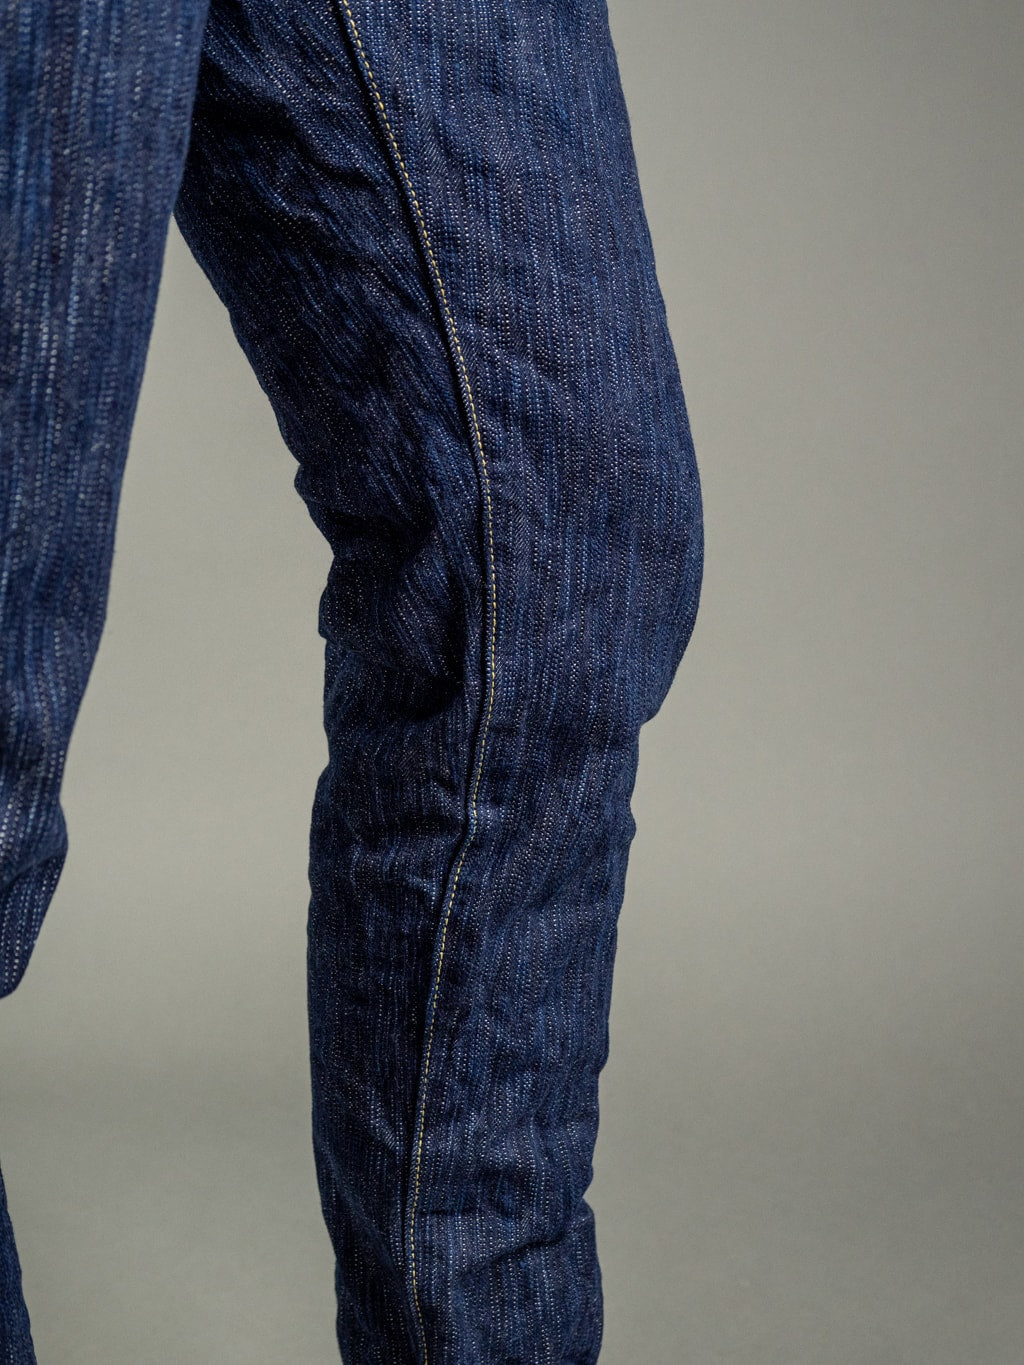 Studio DArtisan Tokushima 15oz Natural Indigo Denim Jeans Inseam